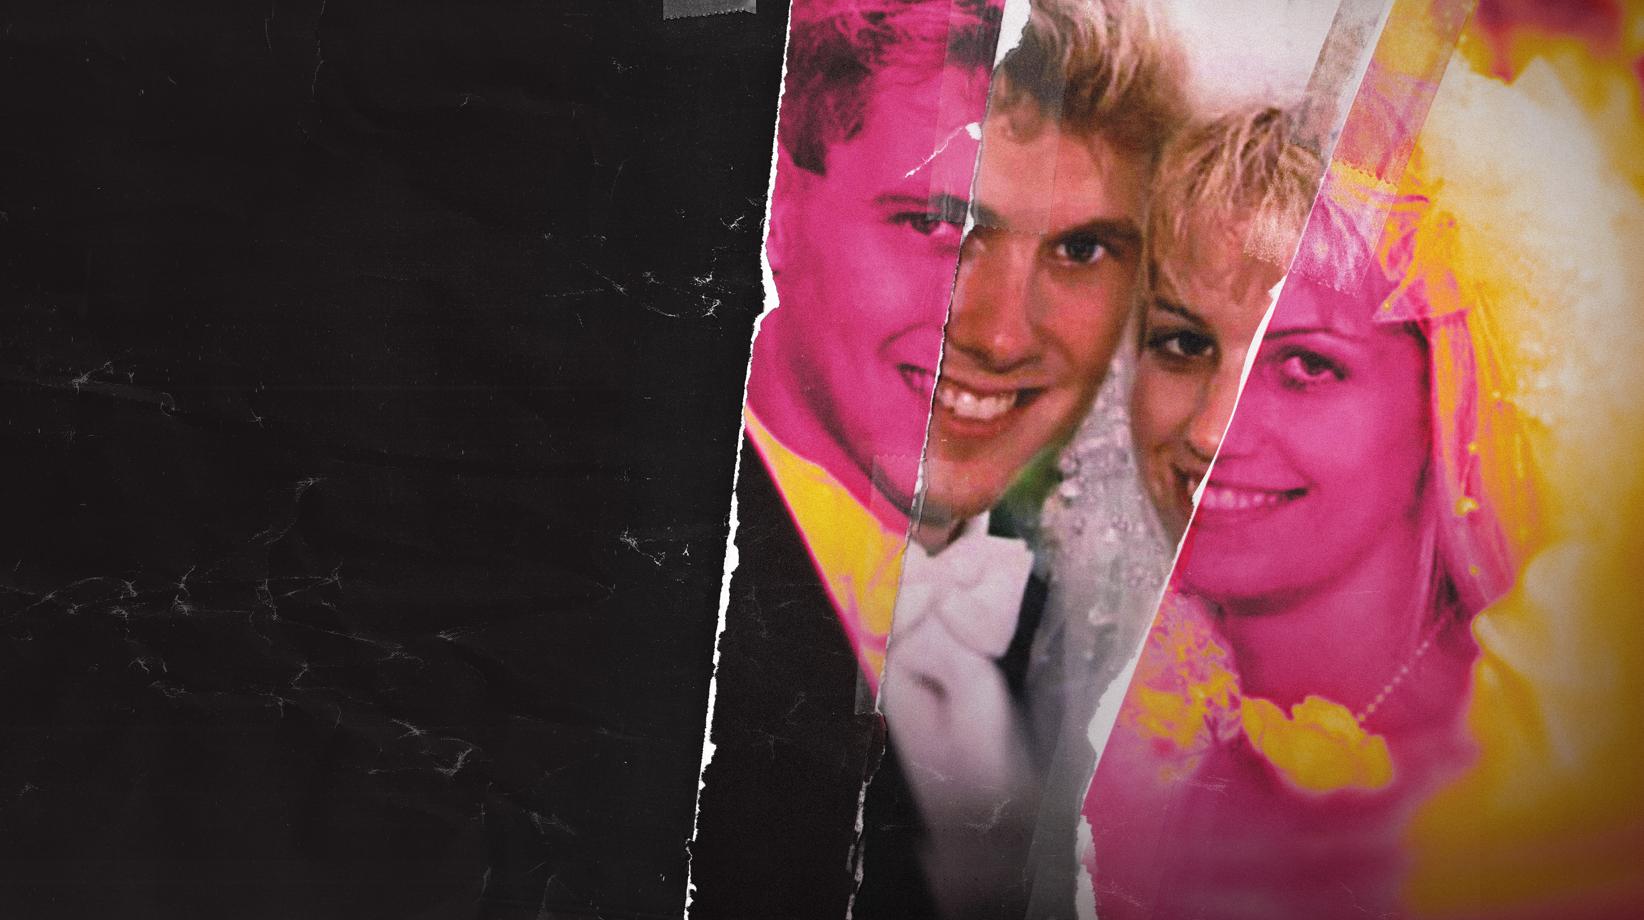 L'histoire terrifiante de "Ken et Barbie", un couple d'assassins racontée dans une série documentaire inédite, dés le 3 mars sur Discovery Investigation